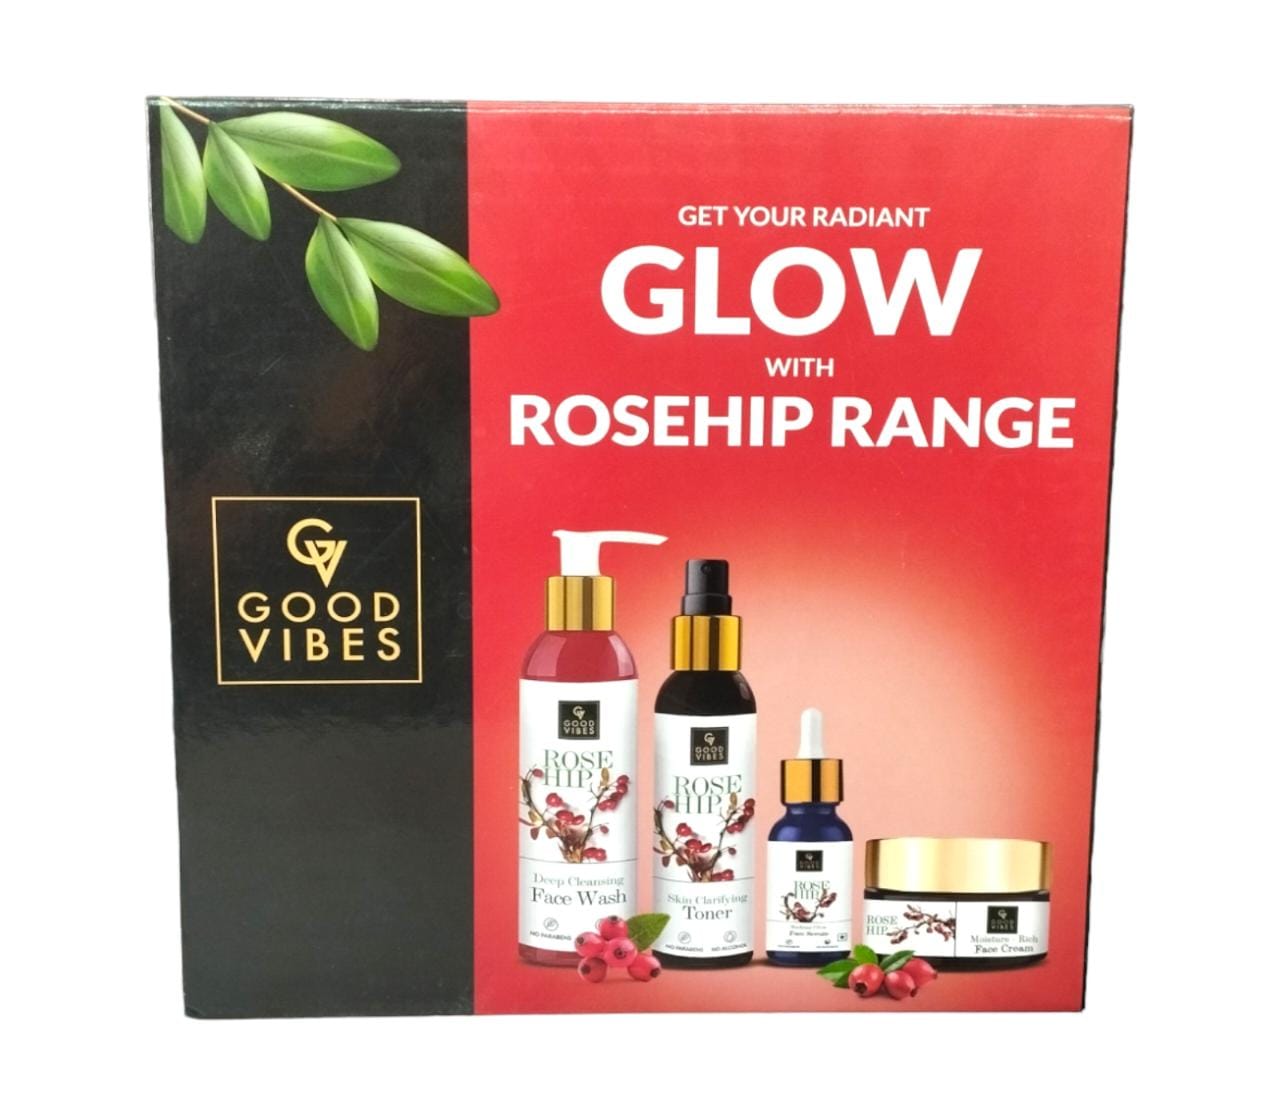 Rosehip radiant glow